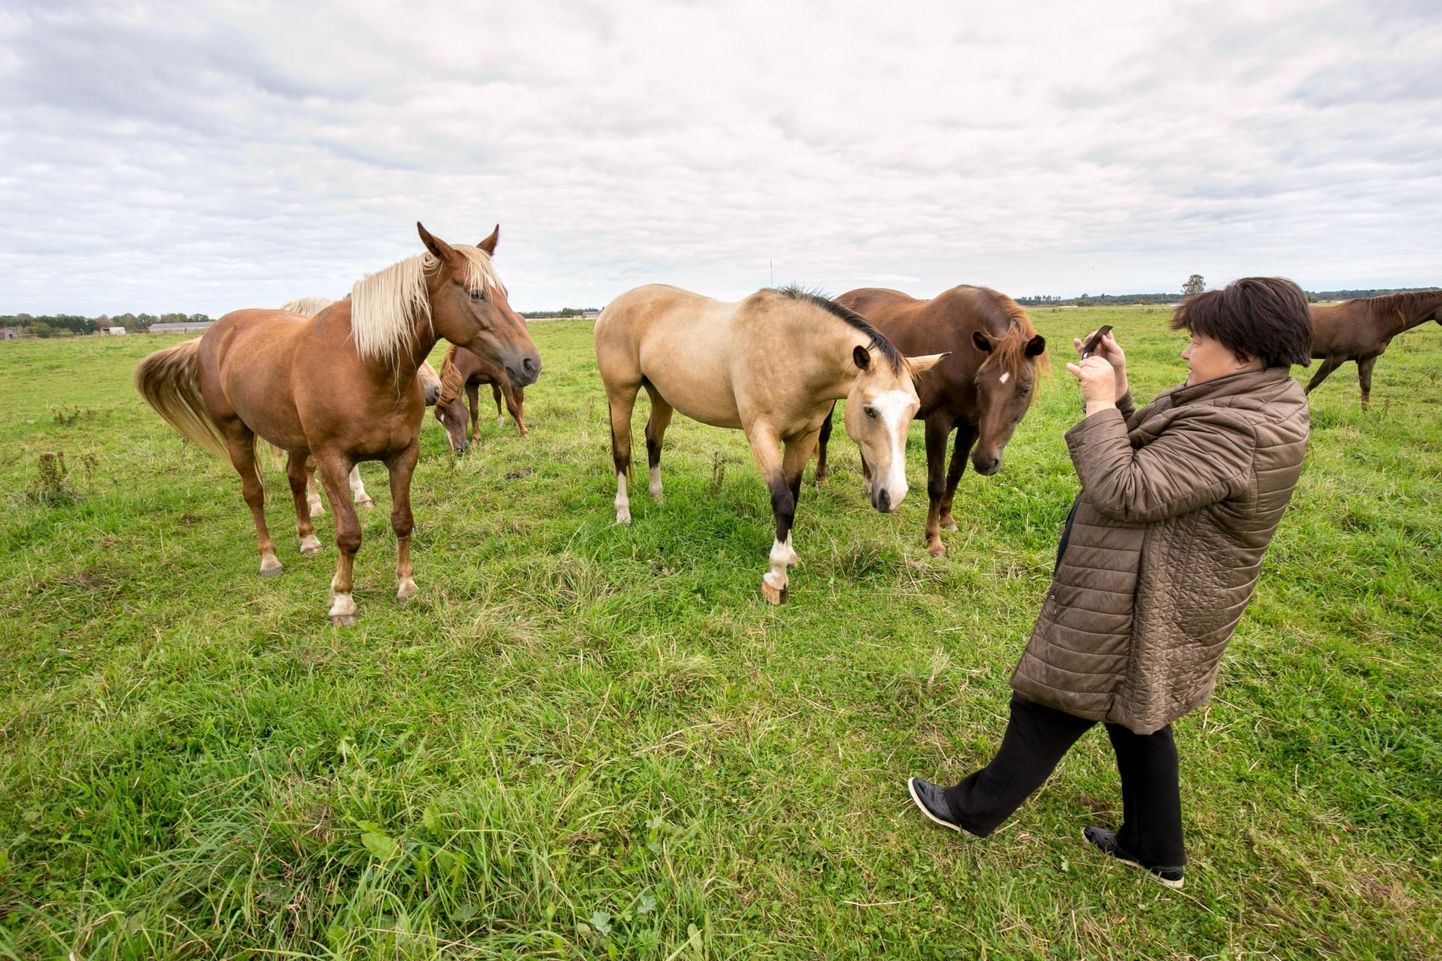 Eesti hobusekasvatajate seltsi juht Krista Sepp nentis, et kolm aastat kestnud kohtutee läbis kolm kohtuastet ja vaidlus sai lõpuks lahenduse: PRIA-l tuleb Eesti hobuse kasvatajaid ühendavale seltsile 100 000 eurot toetusraha välja maksta.